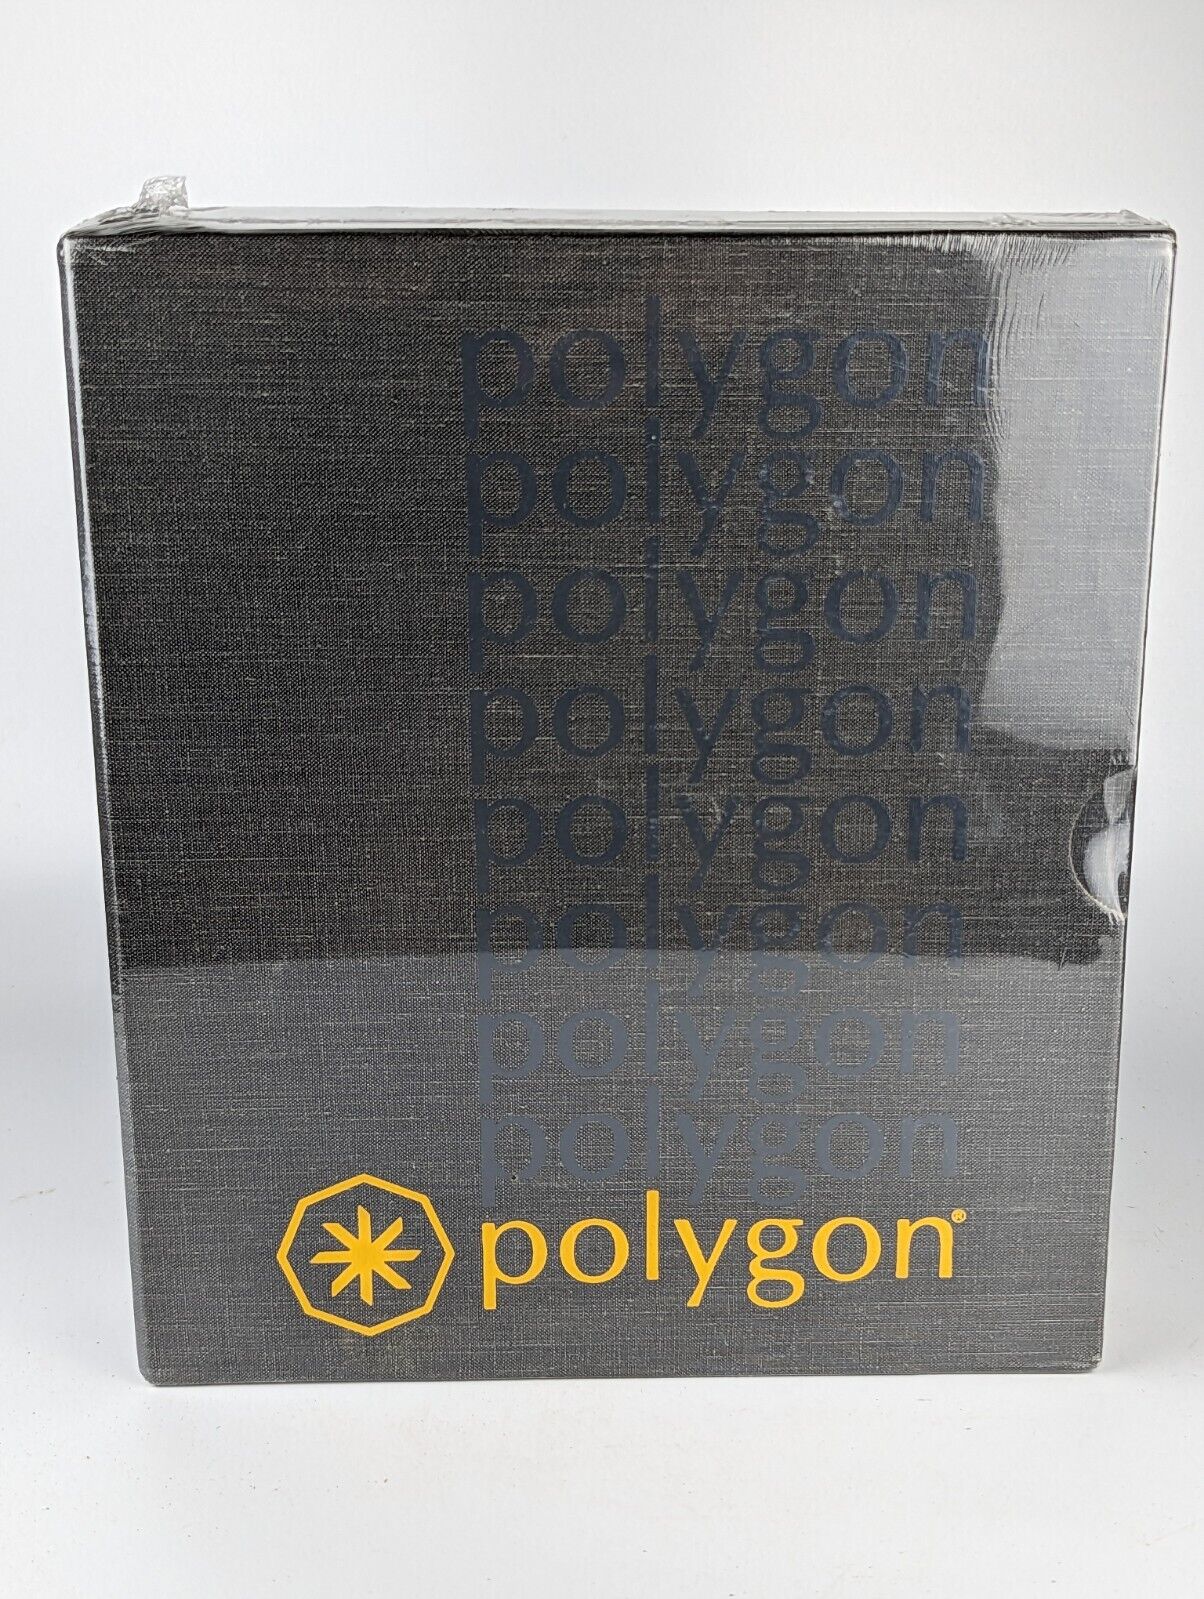 RARE Polygon Poly-COM/240 V1.20 IBM PC 5.25\